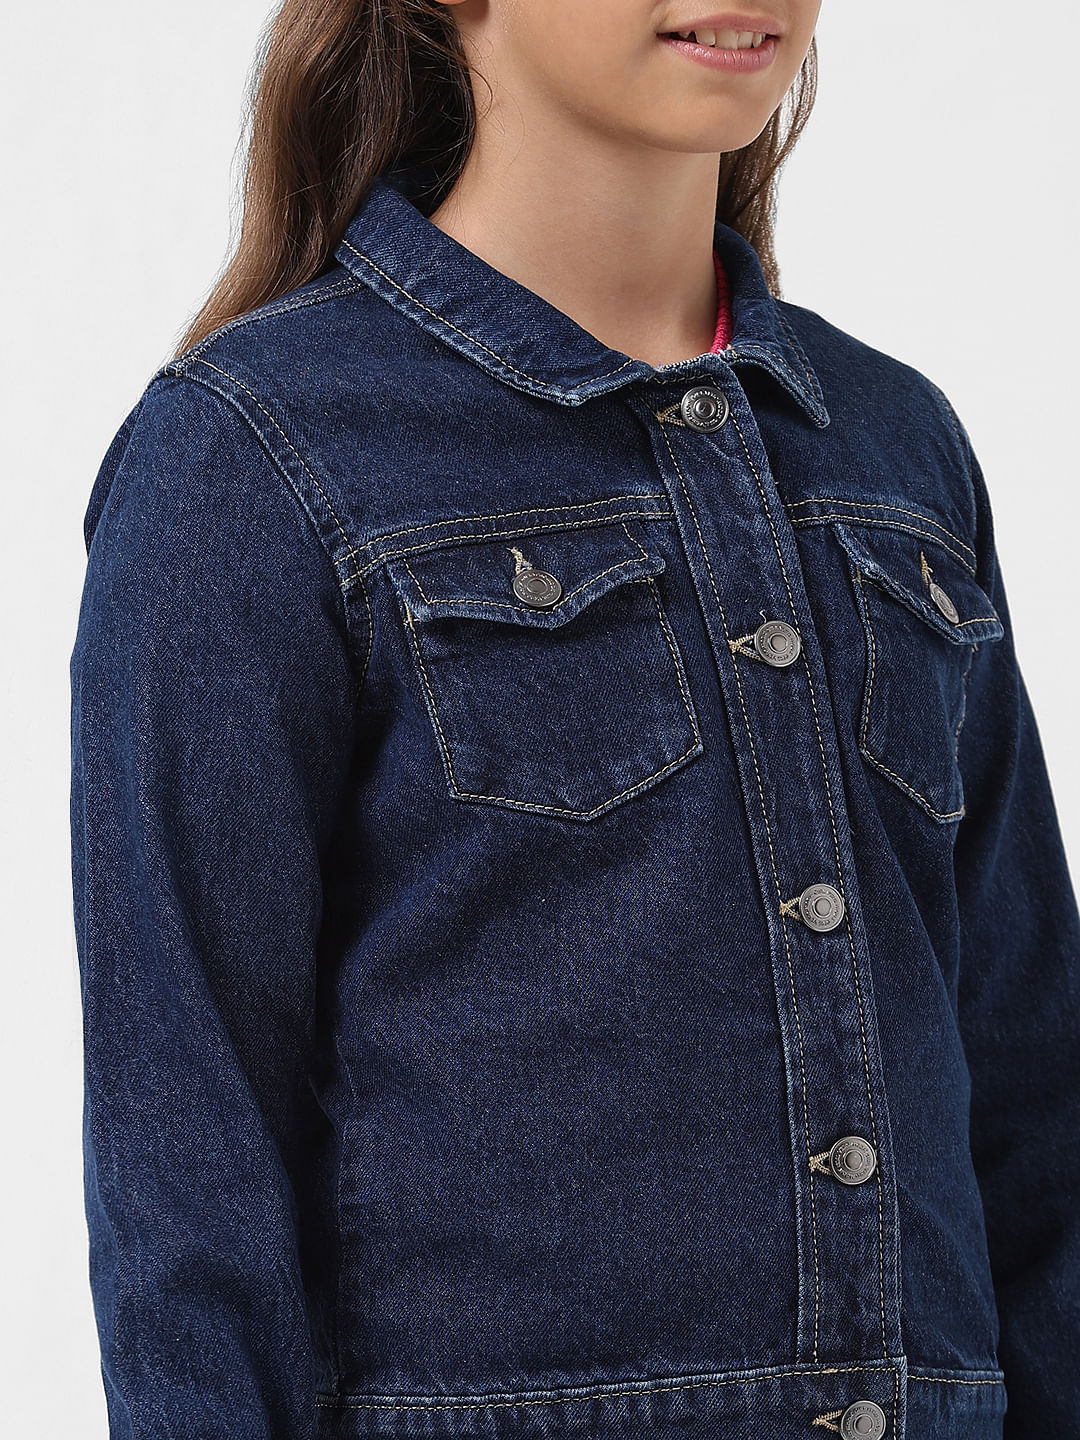 Blue Collarless Denim Jacket | Collarless denim jacket, Jackets, Denim ideas